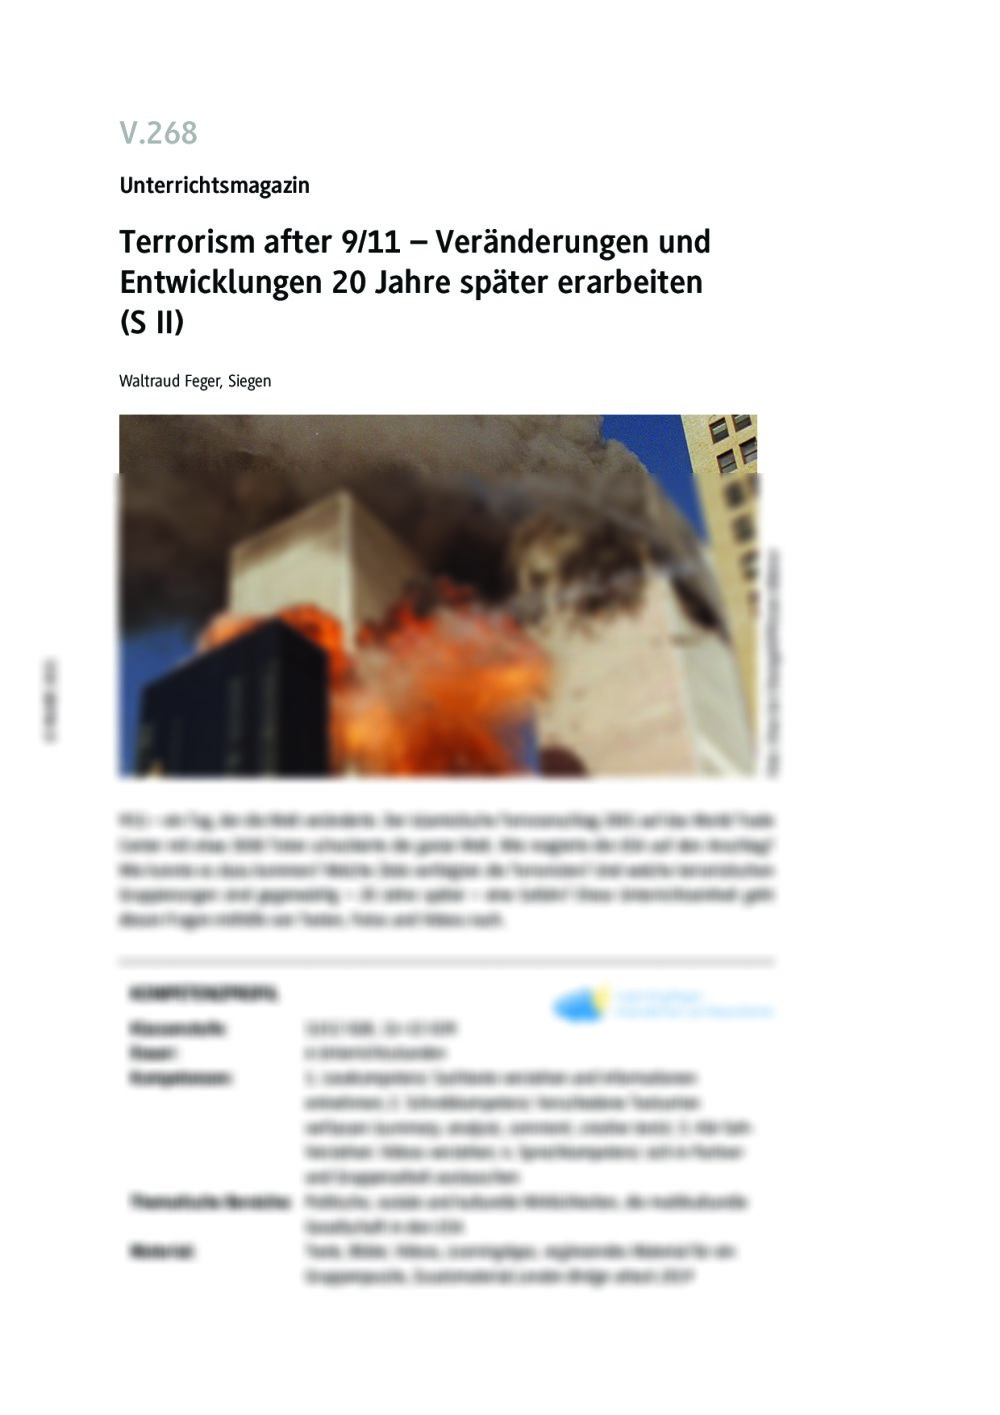 Terrorism after 9/11 - Seite 1